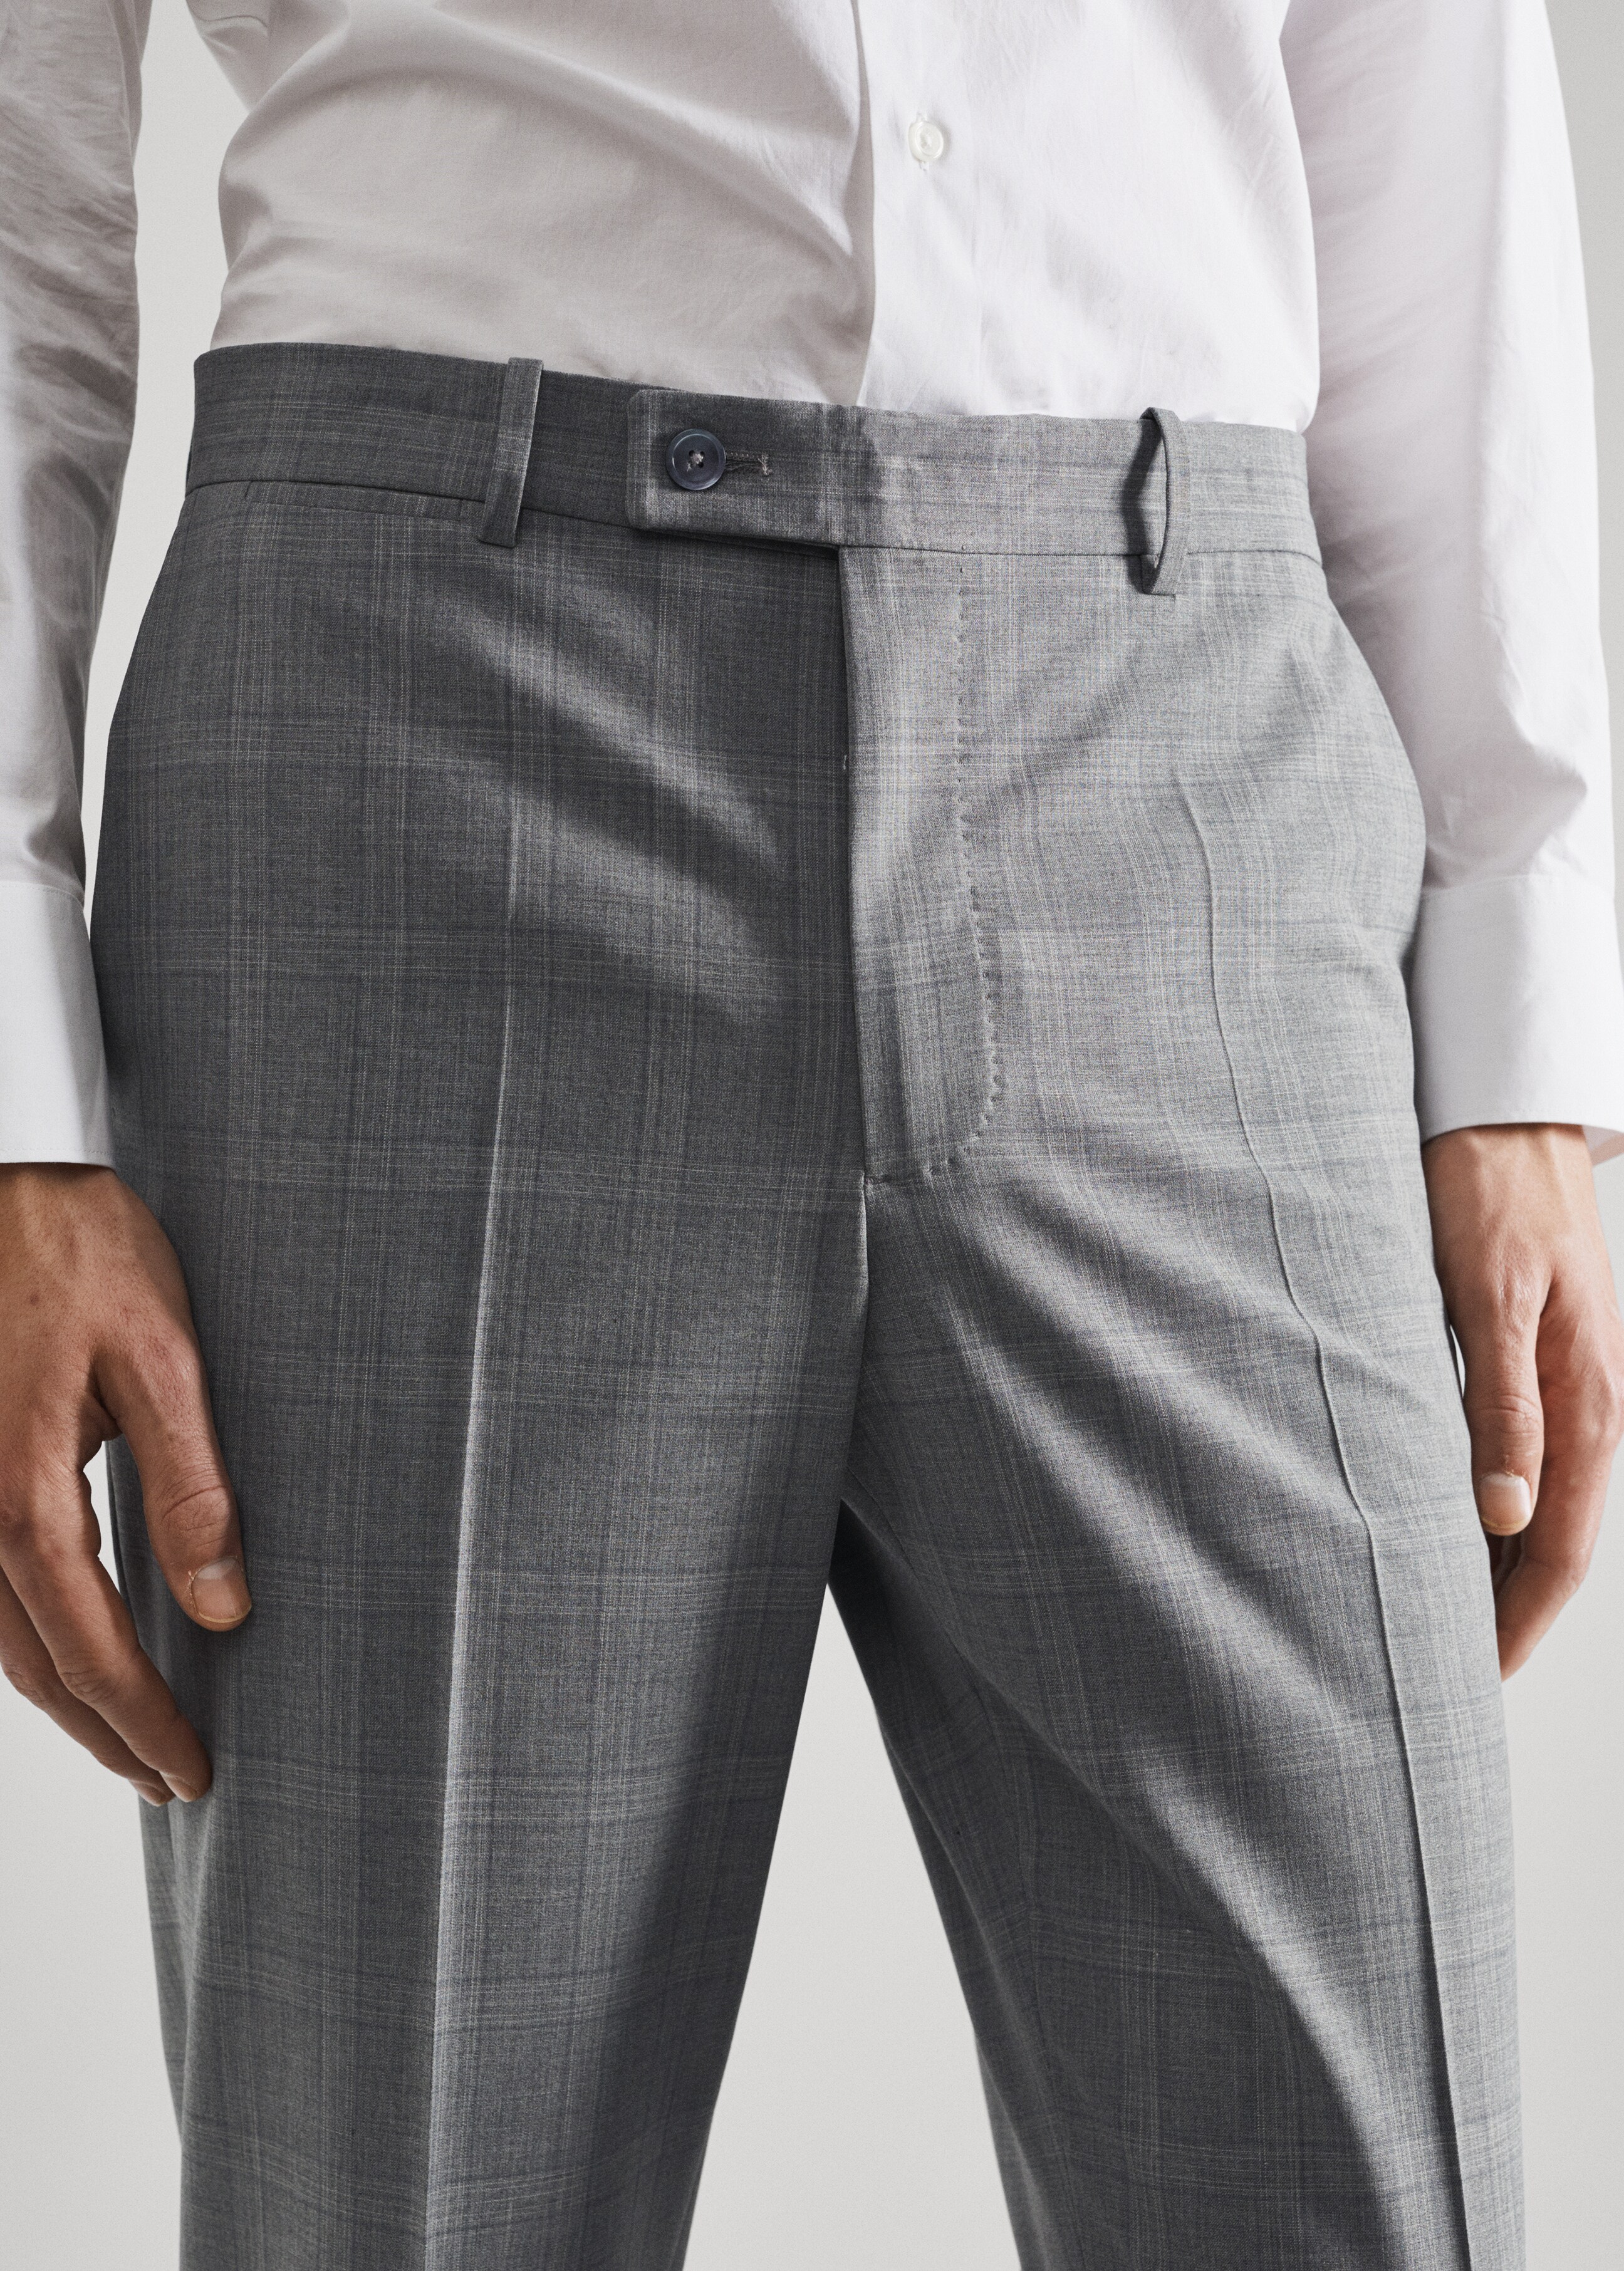 Pantalons vestir slim fit llana - Detall de l'article 1